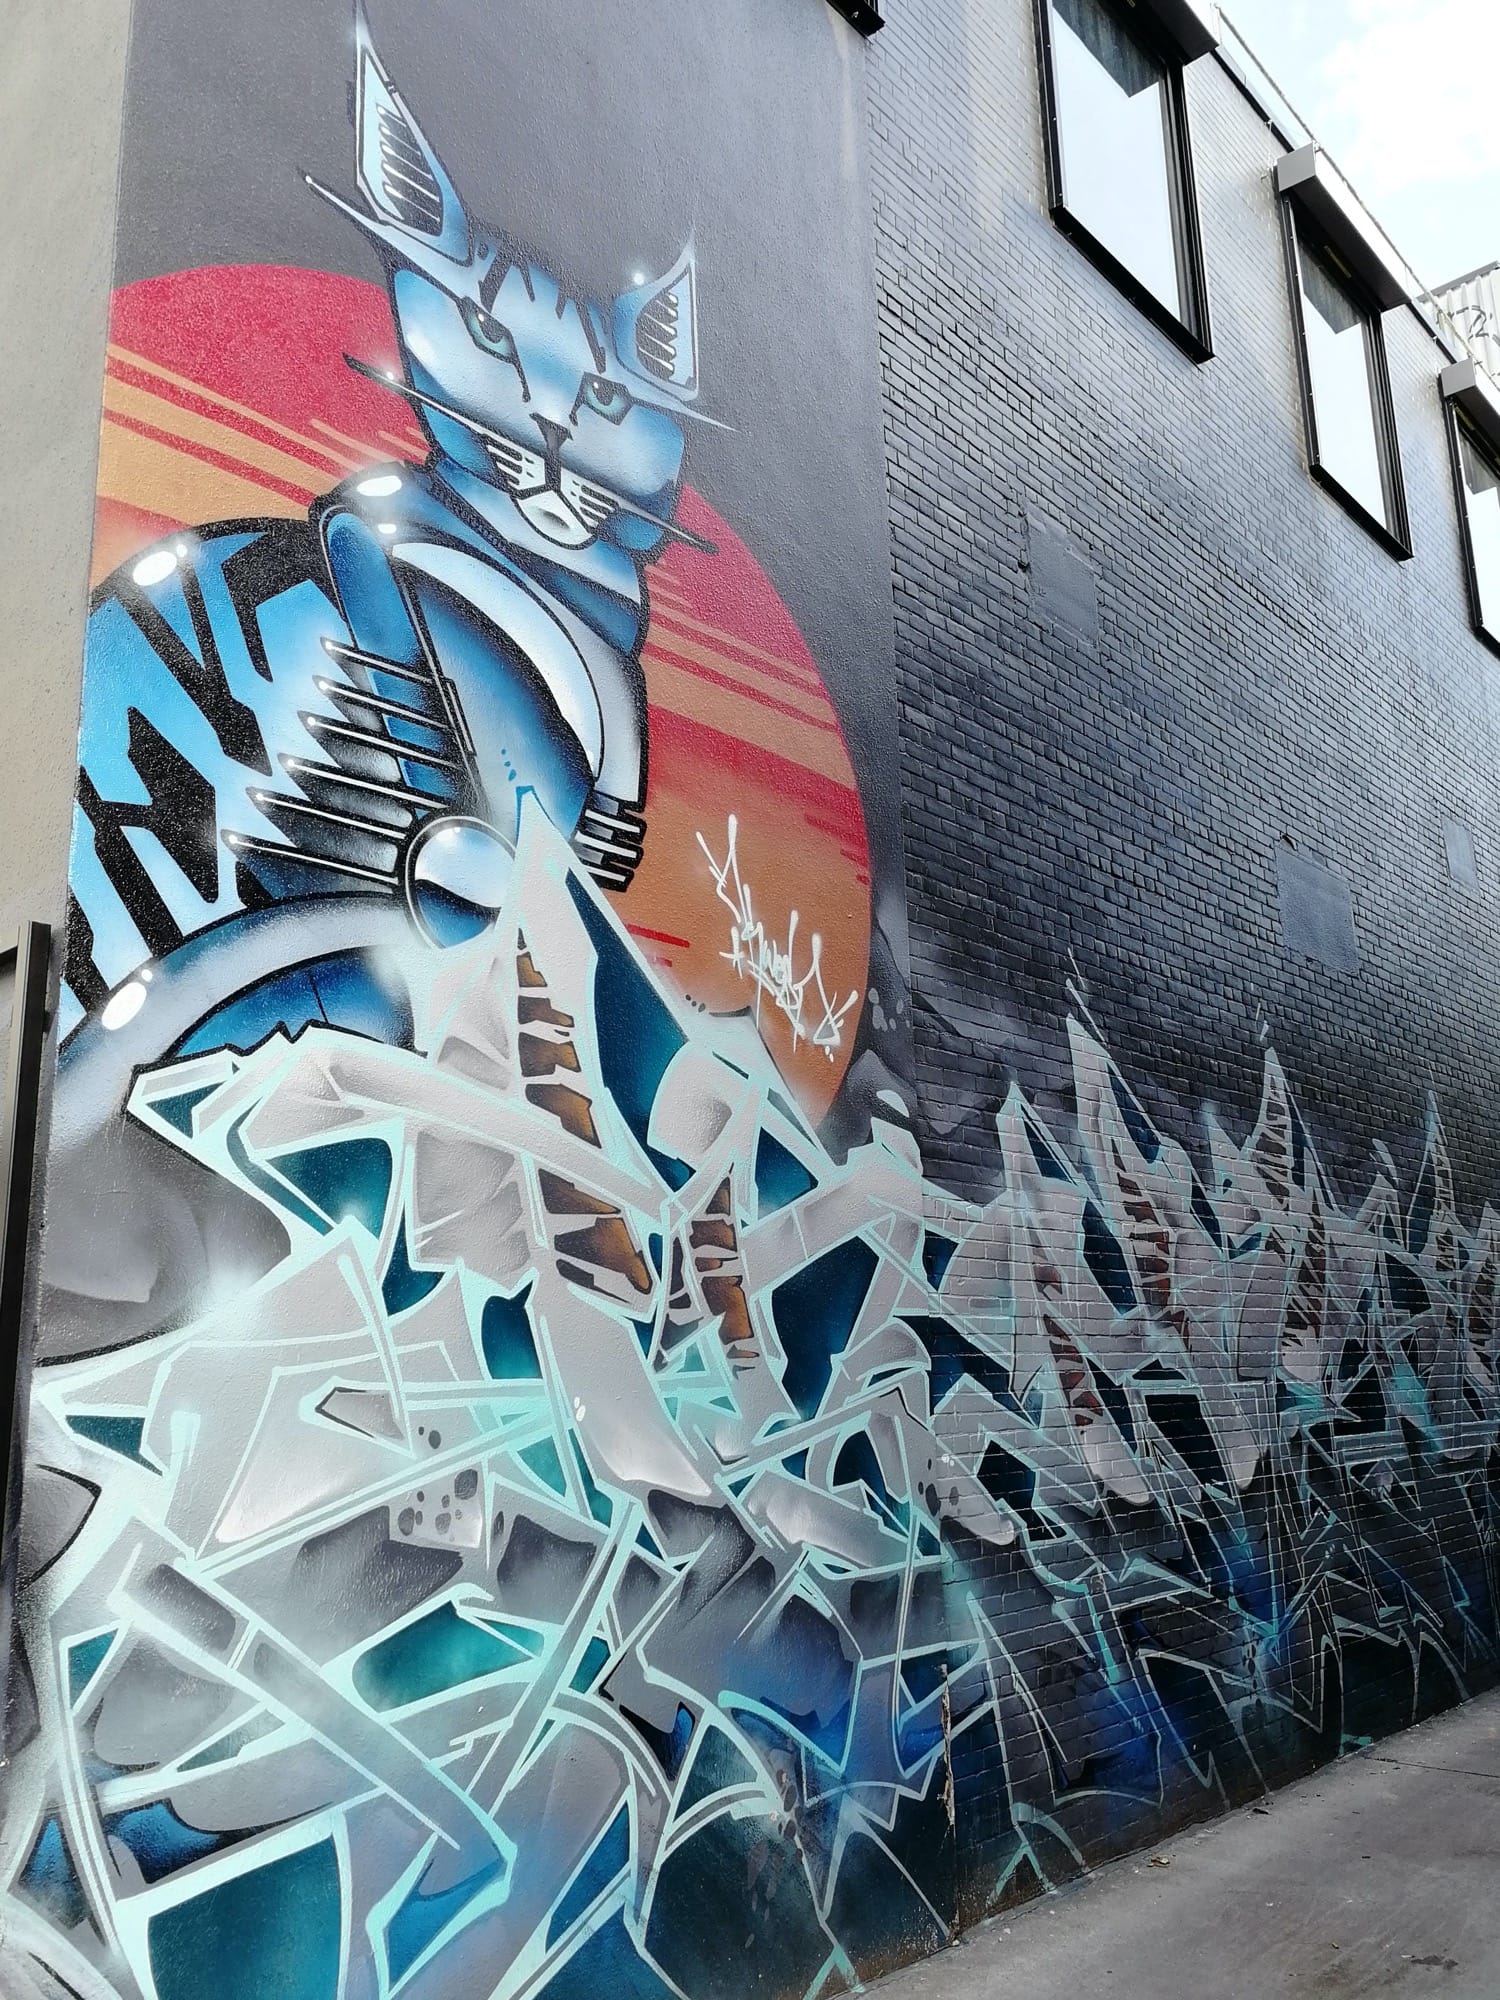 Graffiti 2379  capturé par Rabot à Toronto Canada